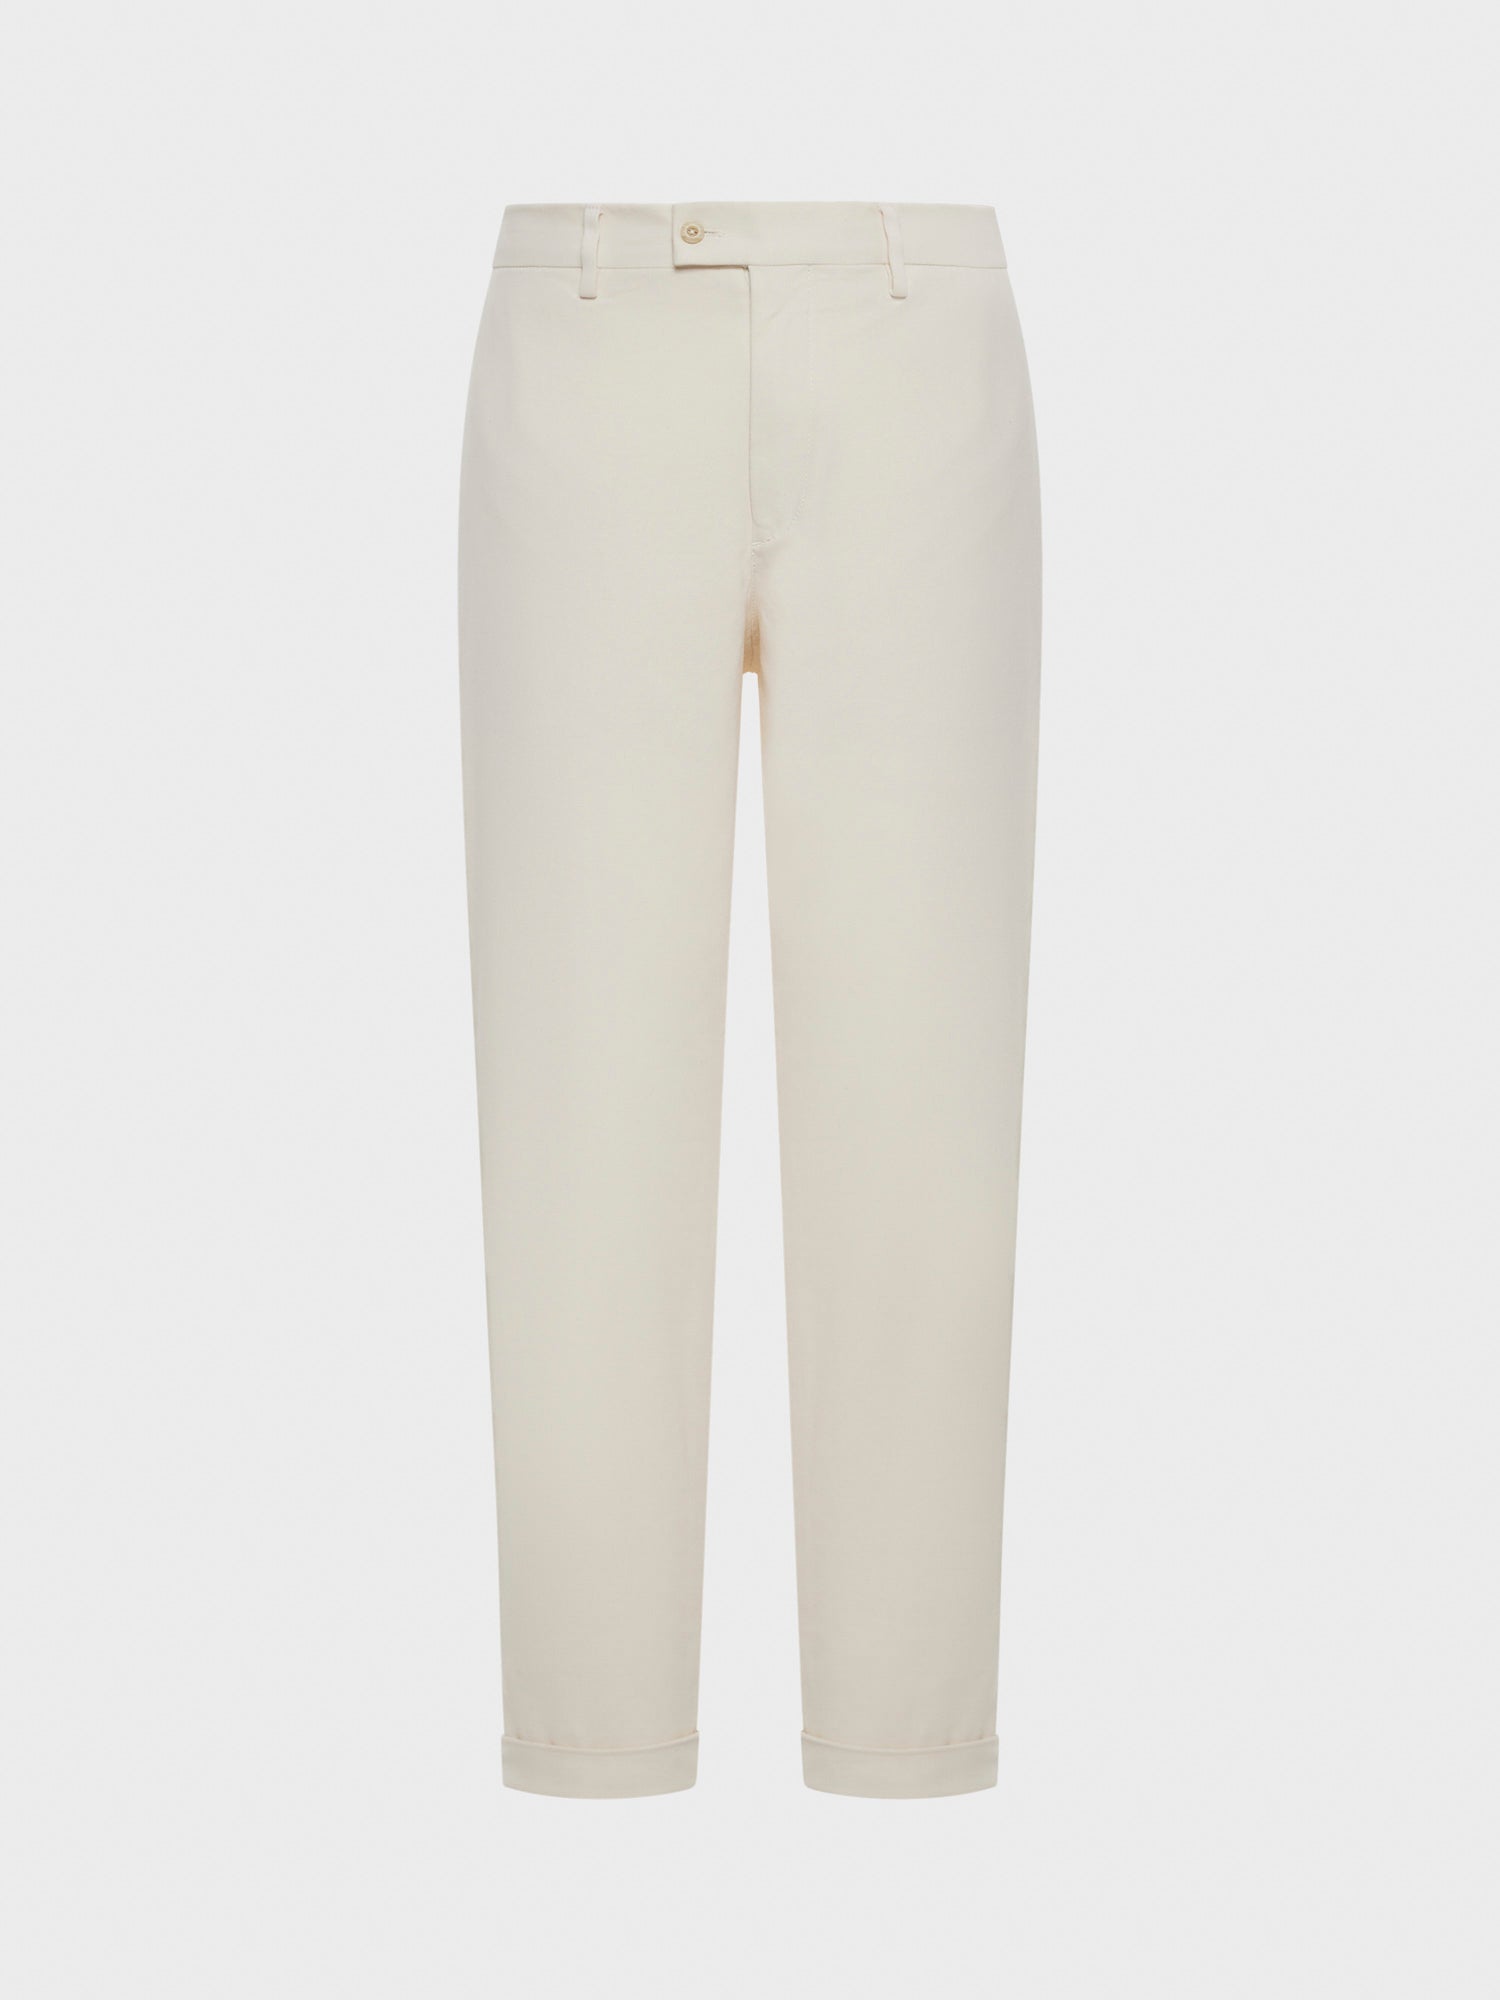 Caruso - White stretch cotton trousers